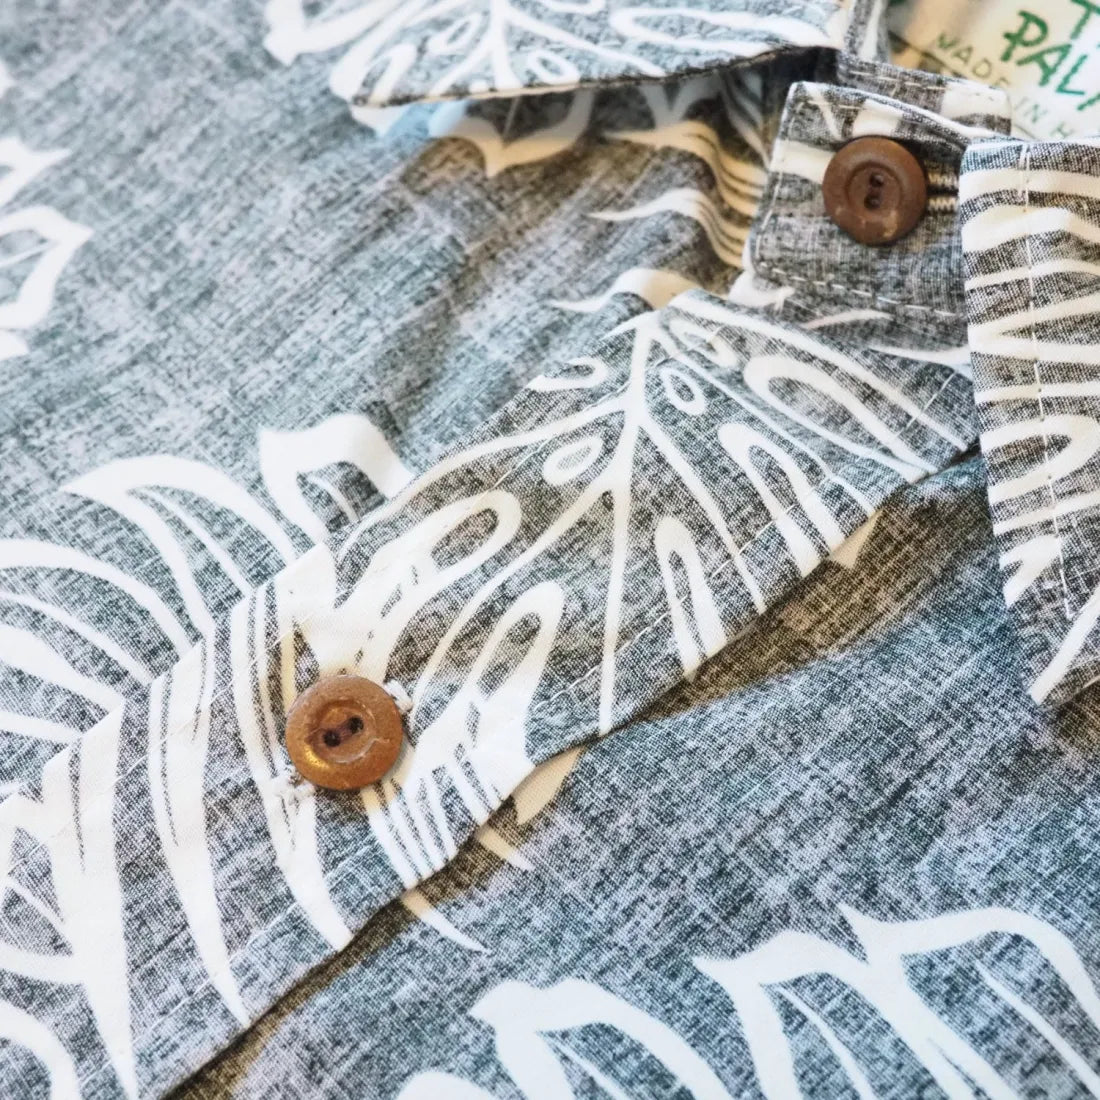 Black Leaf Hawaiian Reverse Shirt - Made In Hawaii